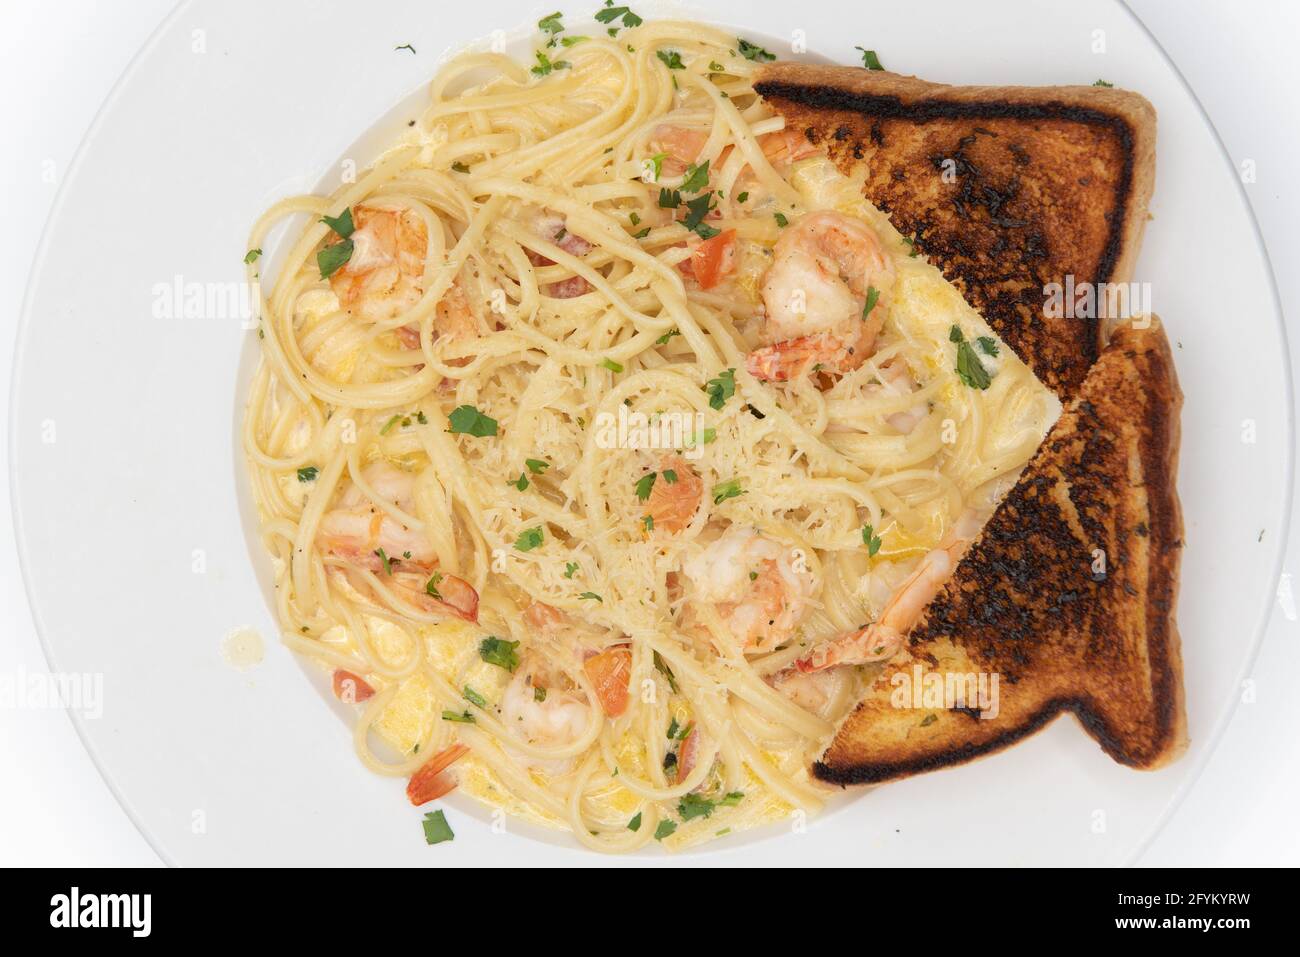 Vue sur les crevettes en sauce au beurre et les pâtes servies sur une assiette avec des toasts grillés pour un appétit généreux. Banque D'Images